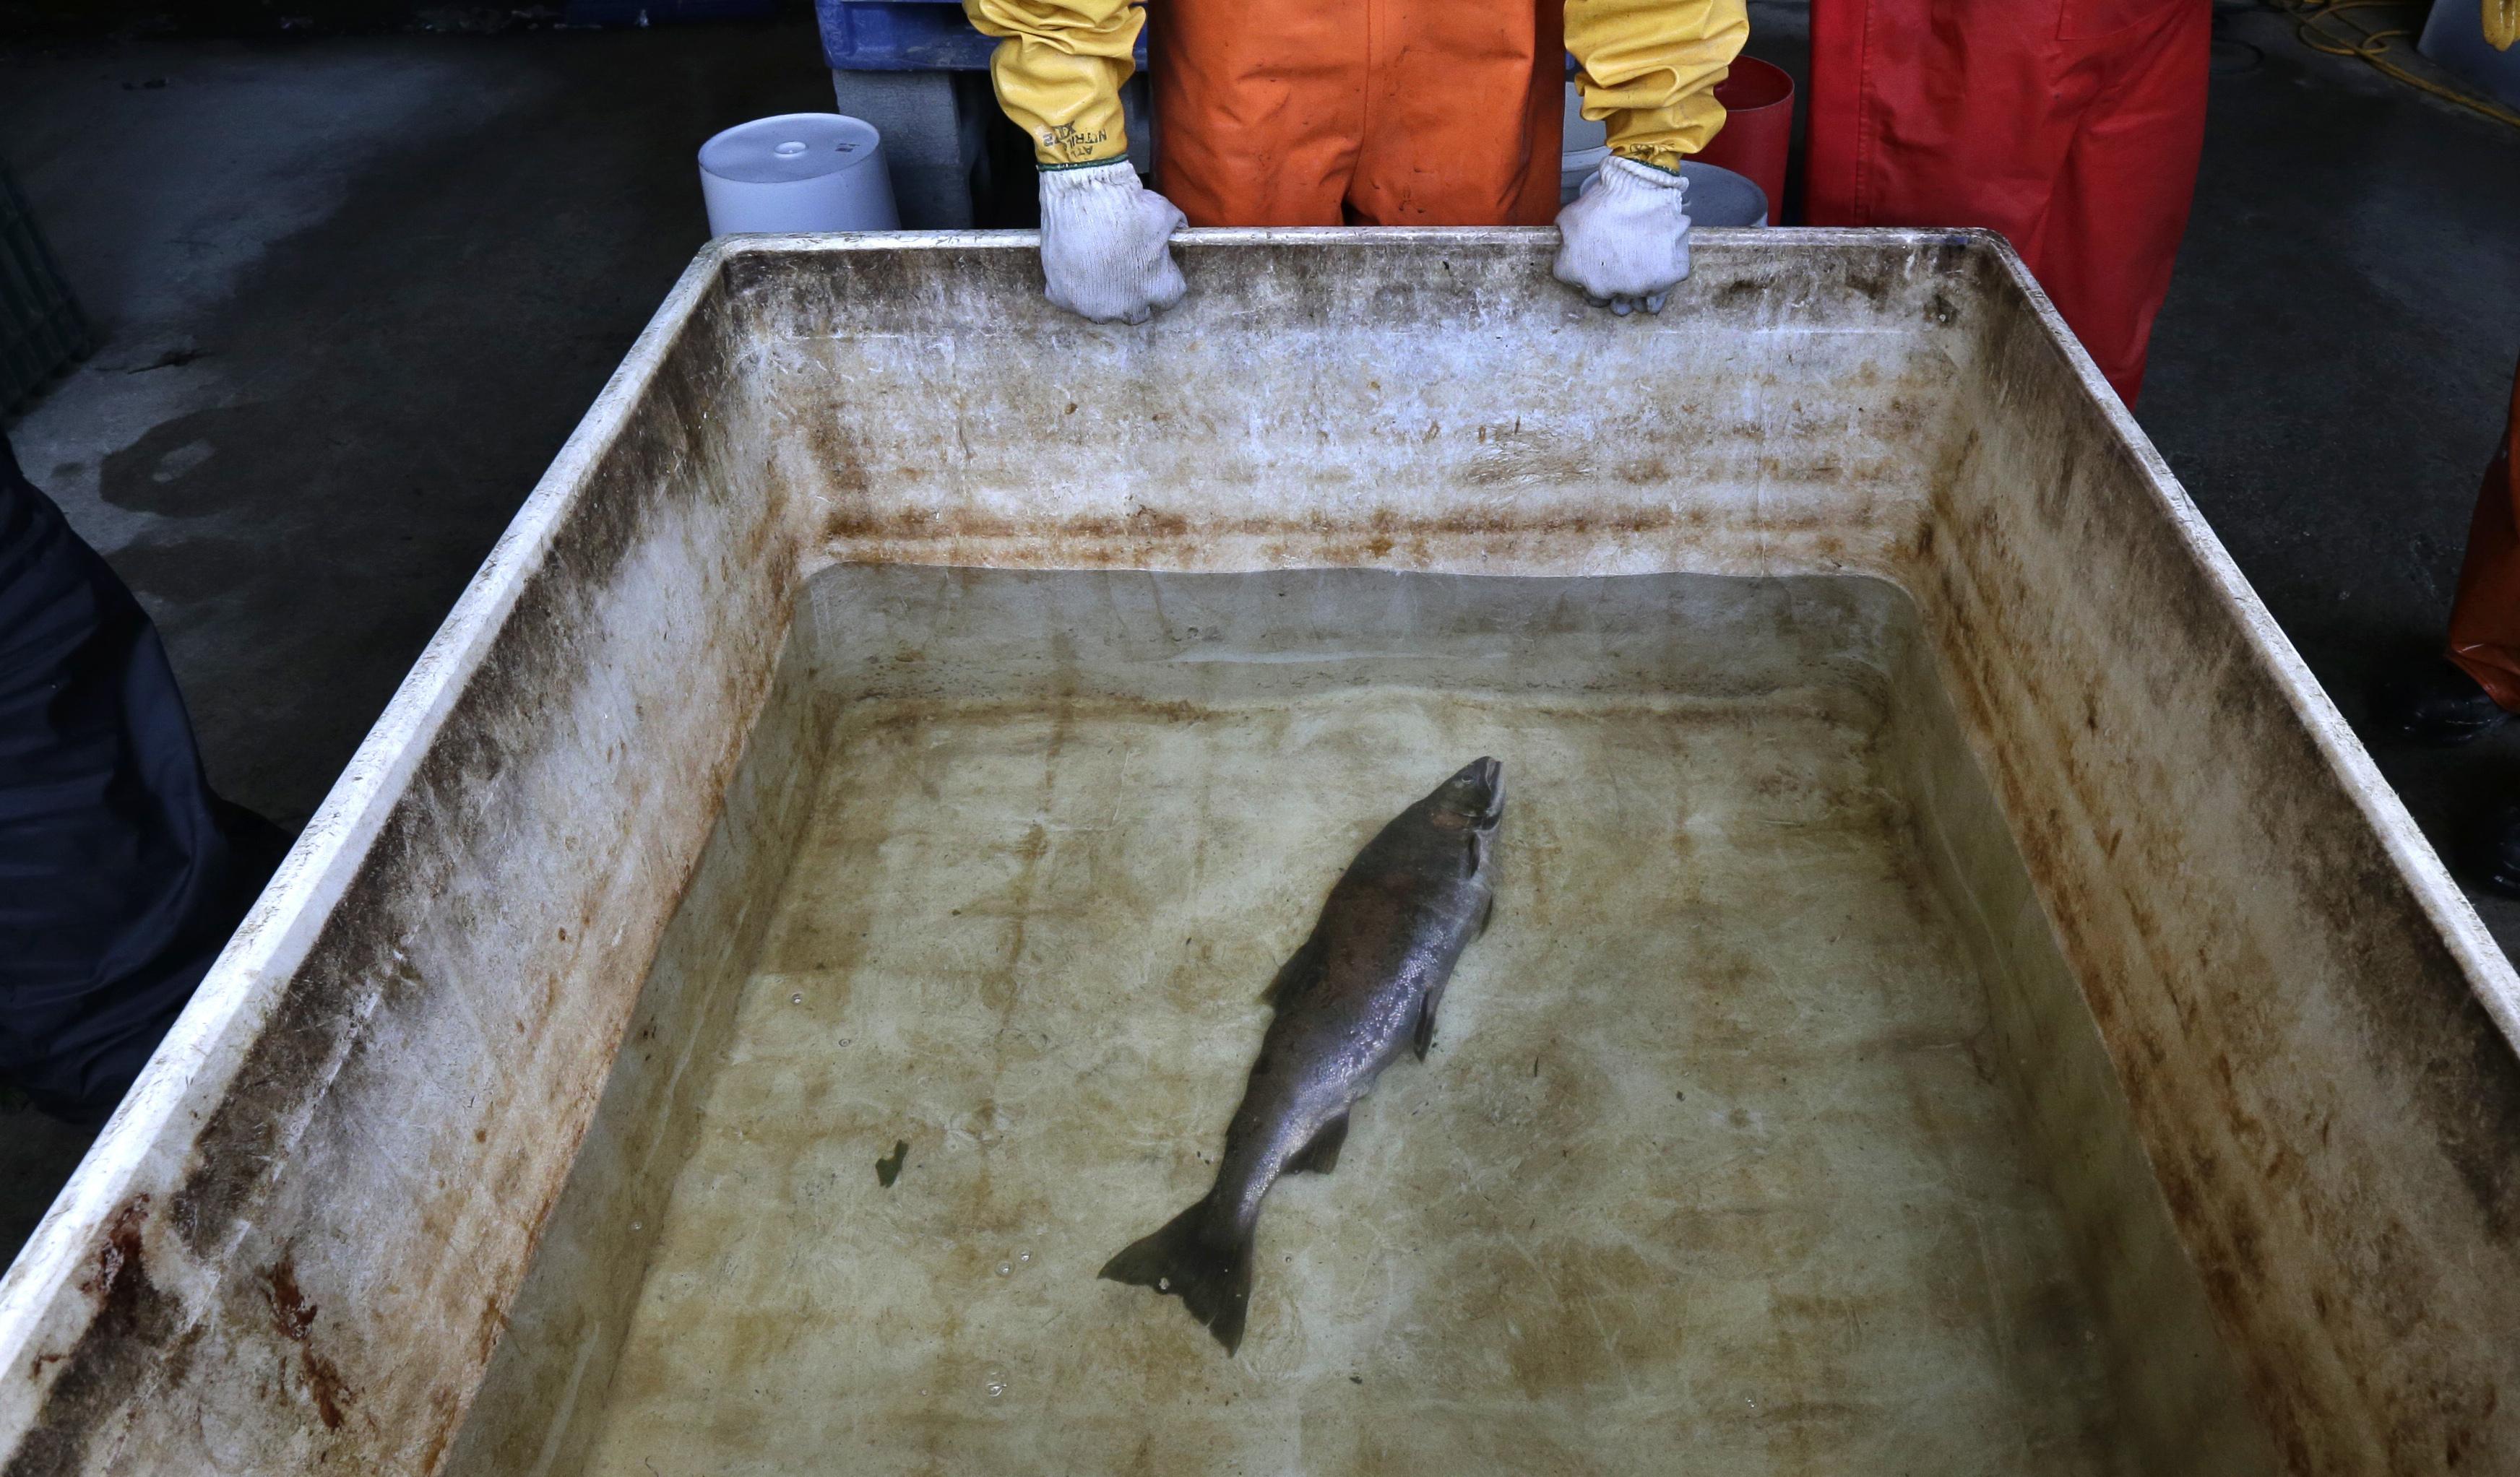 A juicio por capturar un salmón con un fusil de pesca submarina y neopreno  sin permisos